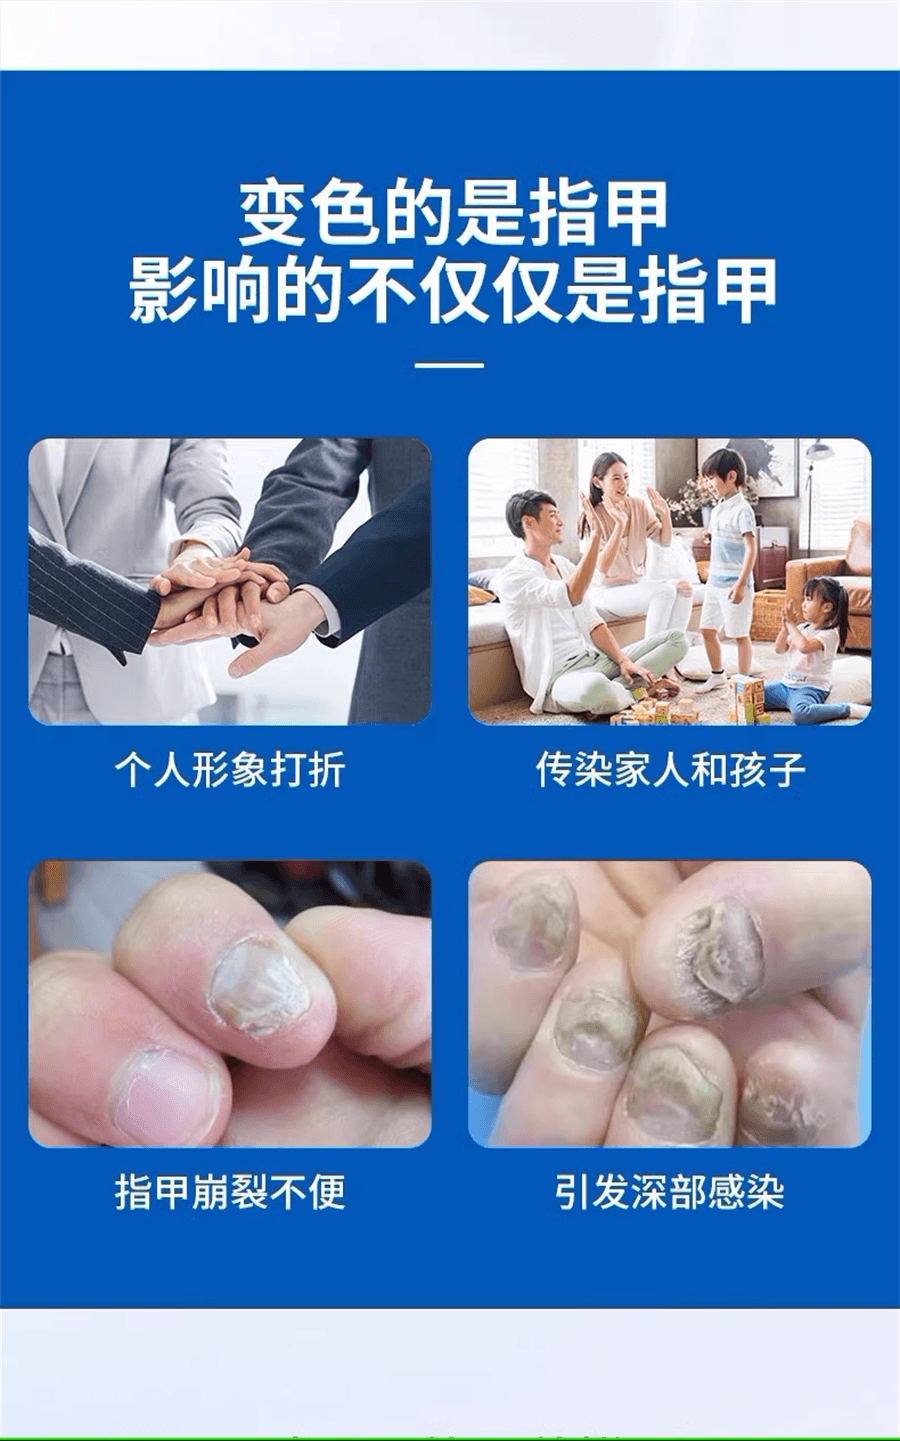 【中國直郵】麗點 鹽酸阿莫羅芬搽劑灰指甲專用藥治療真菌藥擦劑 2mL x 1盒